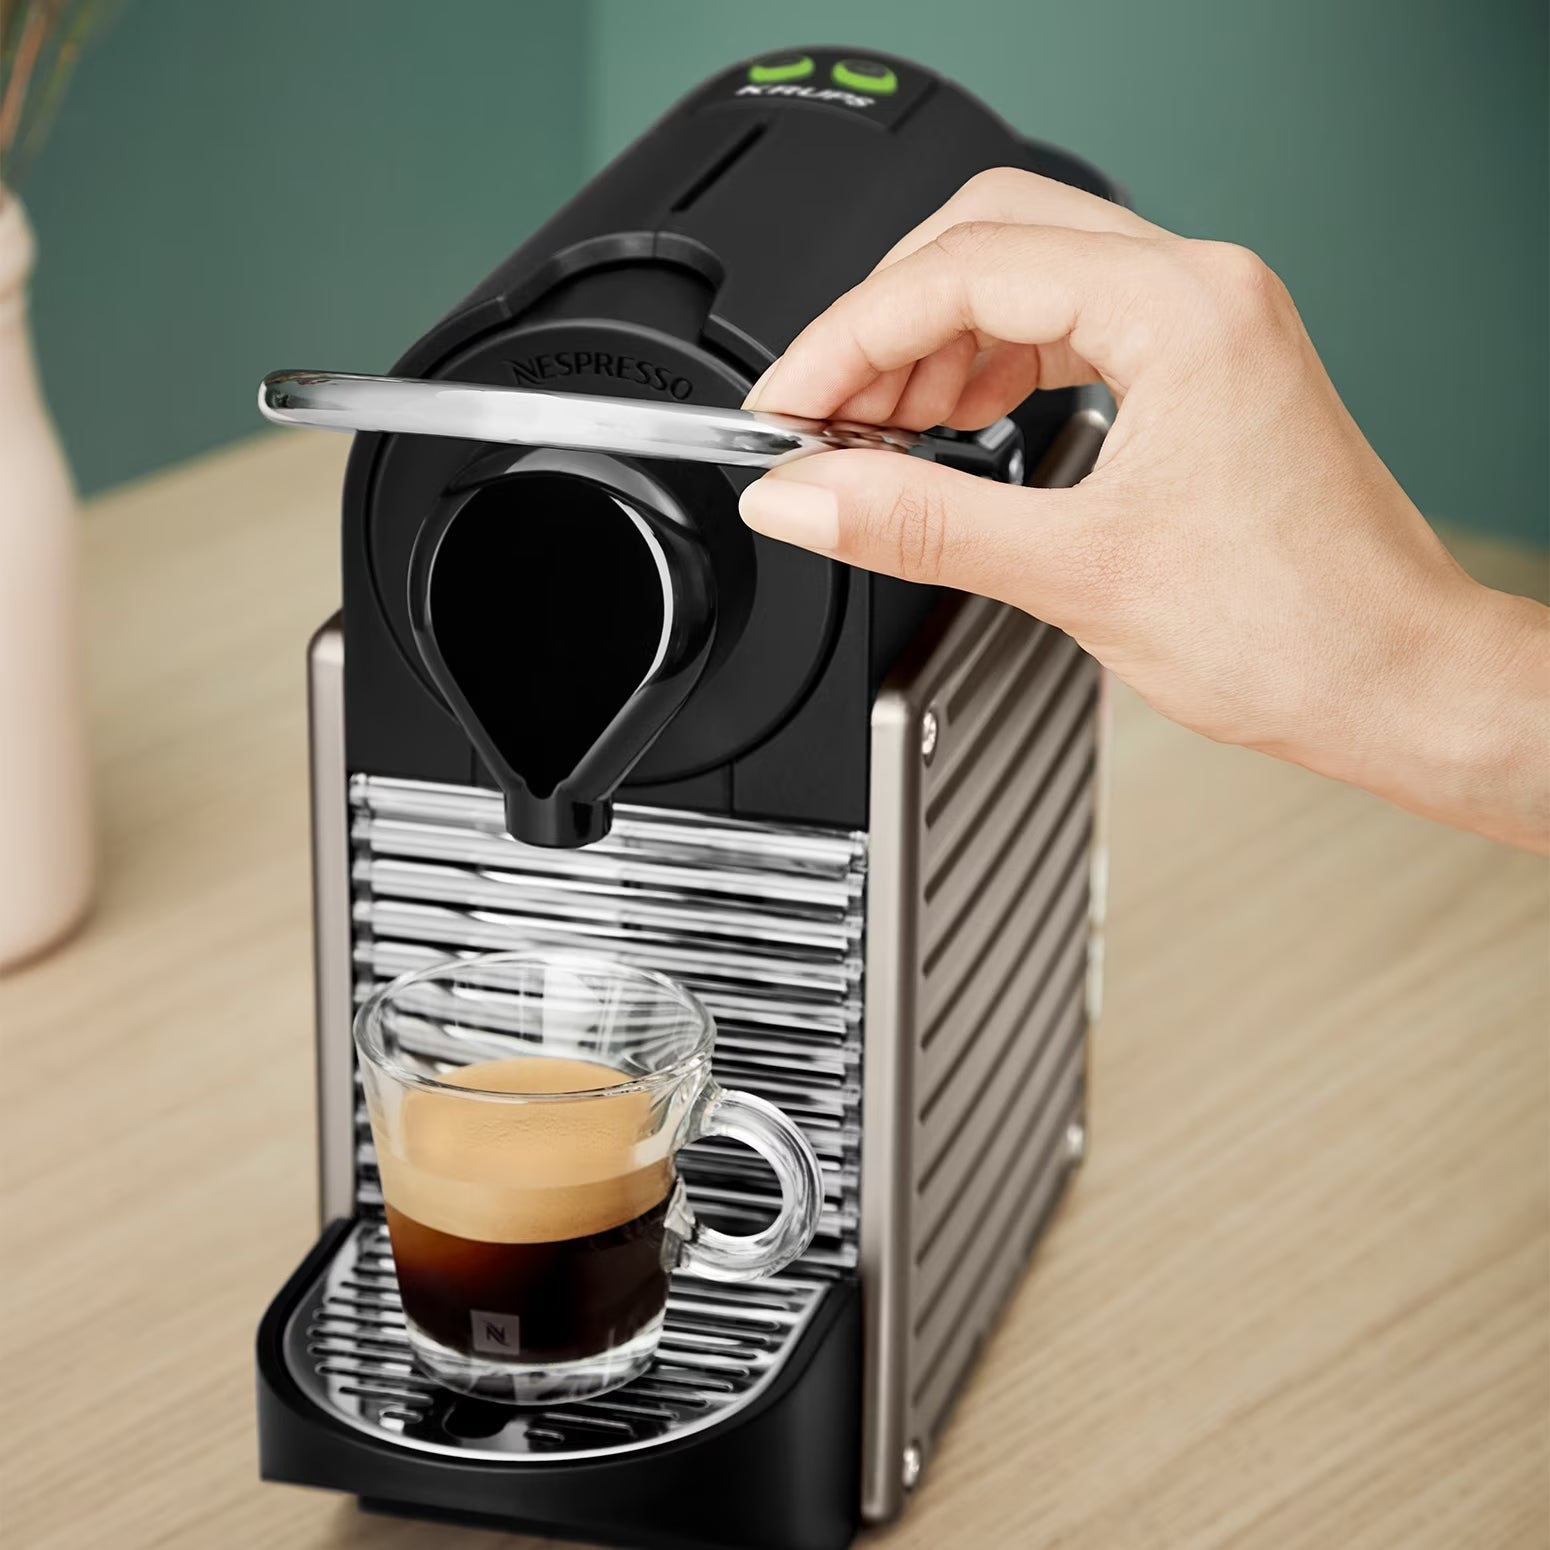 Comment démarrer une machine Nespresso